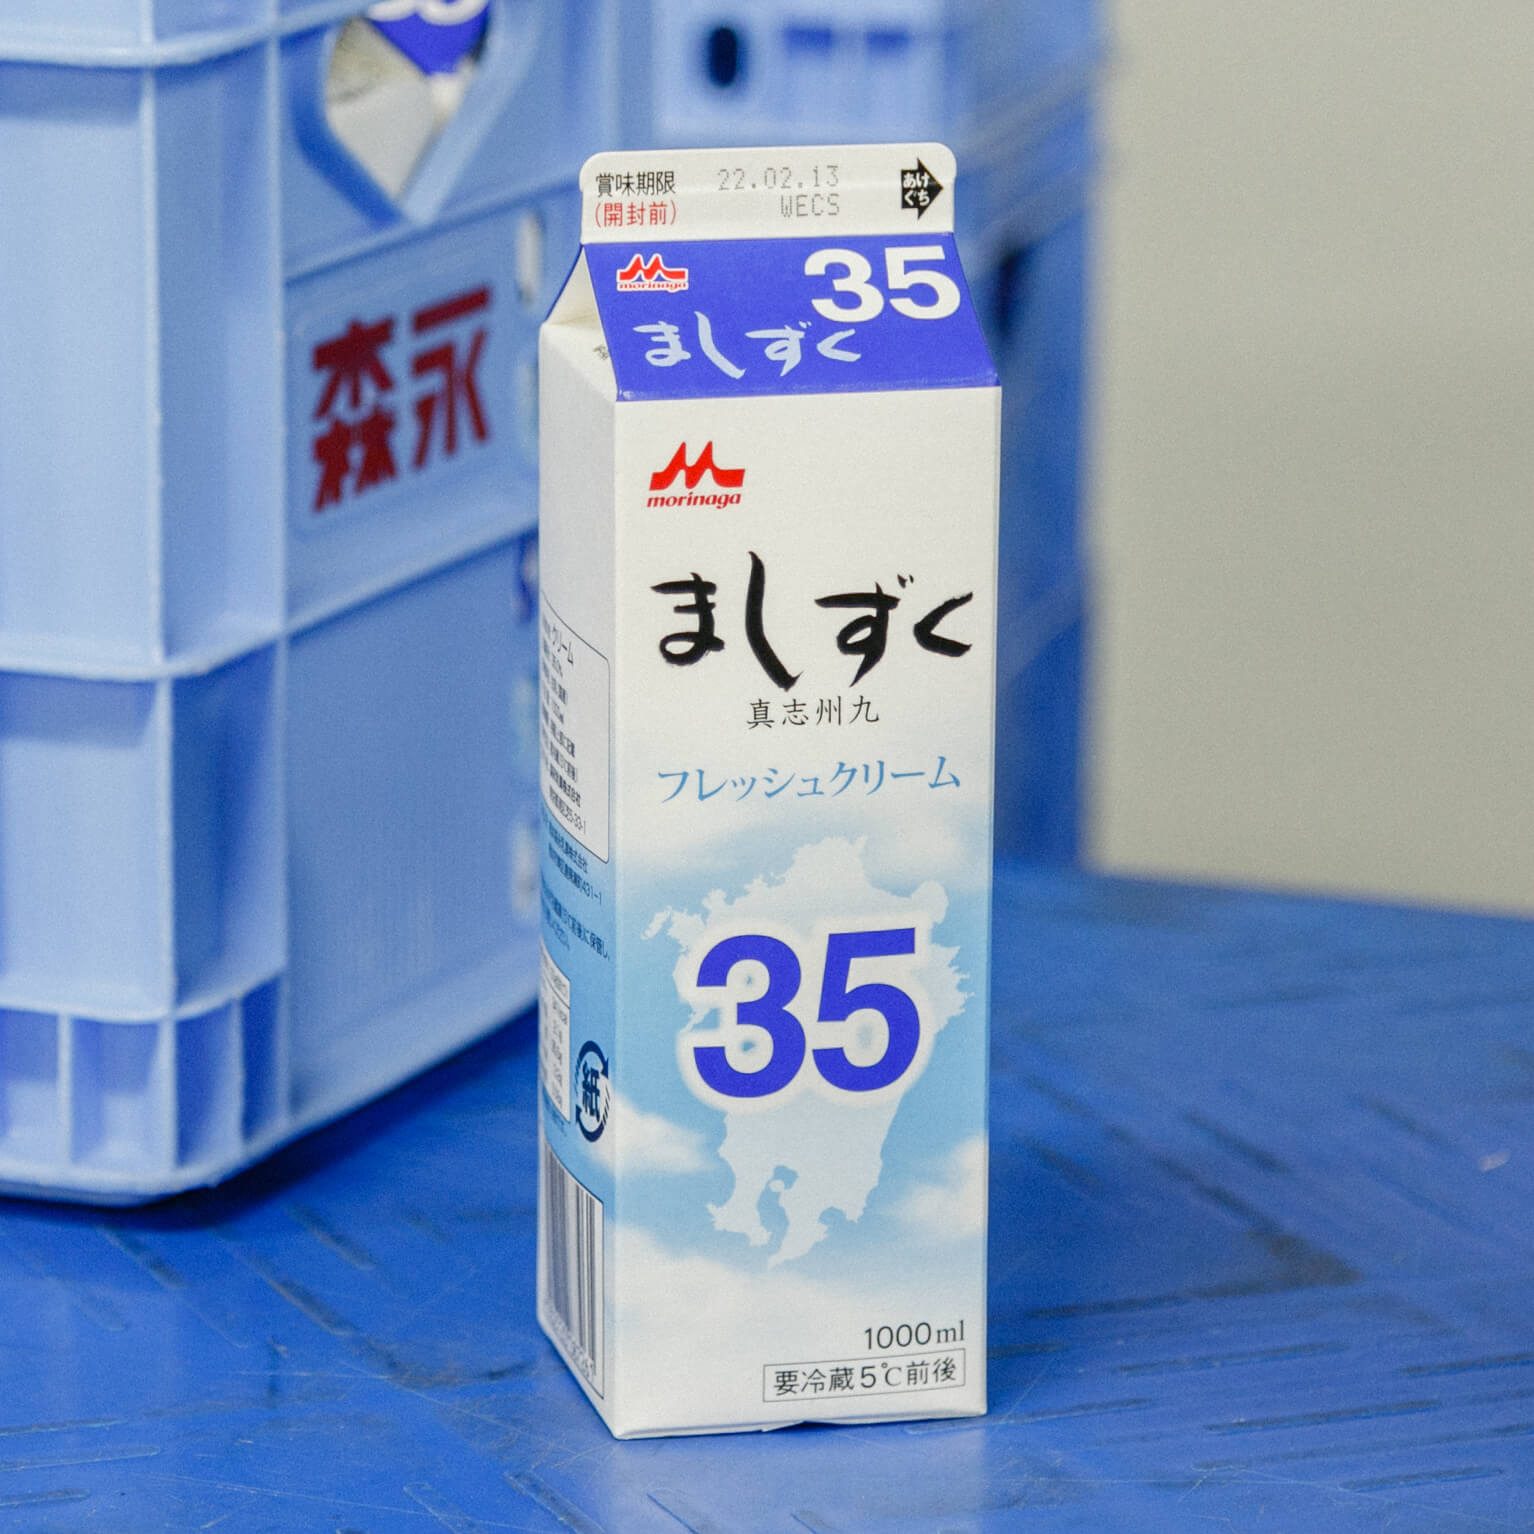 フレッシュクリーム ましずく35 1000ml : 乳製品 | スモールビジネスのための問屋サービス orderie(オーダリー)